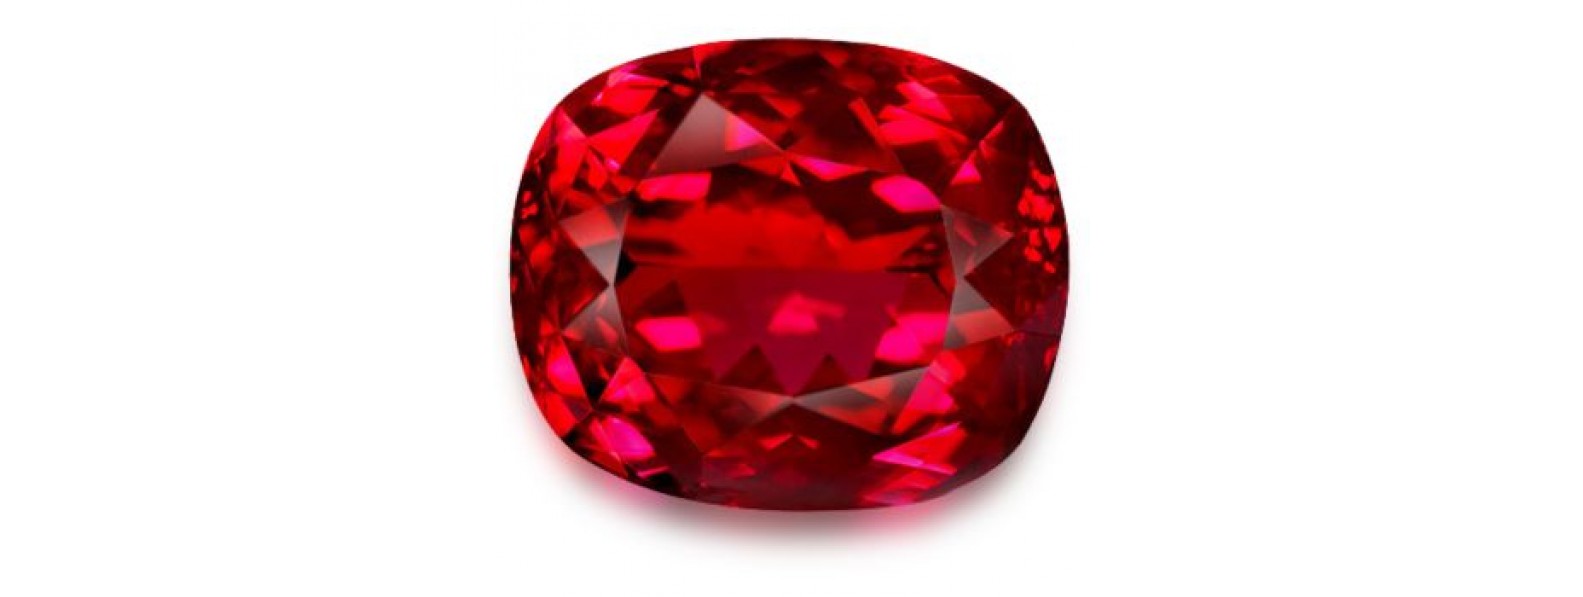 Buy quality spinel gems online | Natural Spinel Gemstones - Gempiece